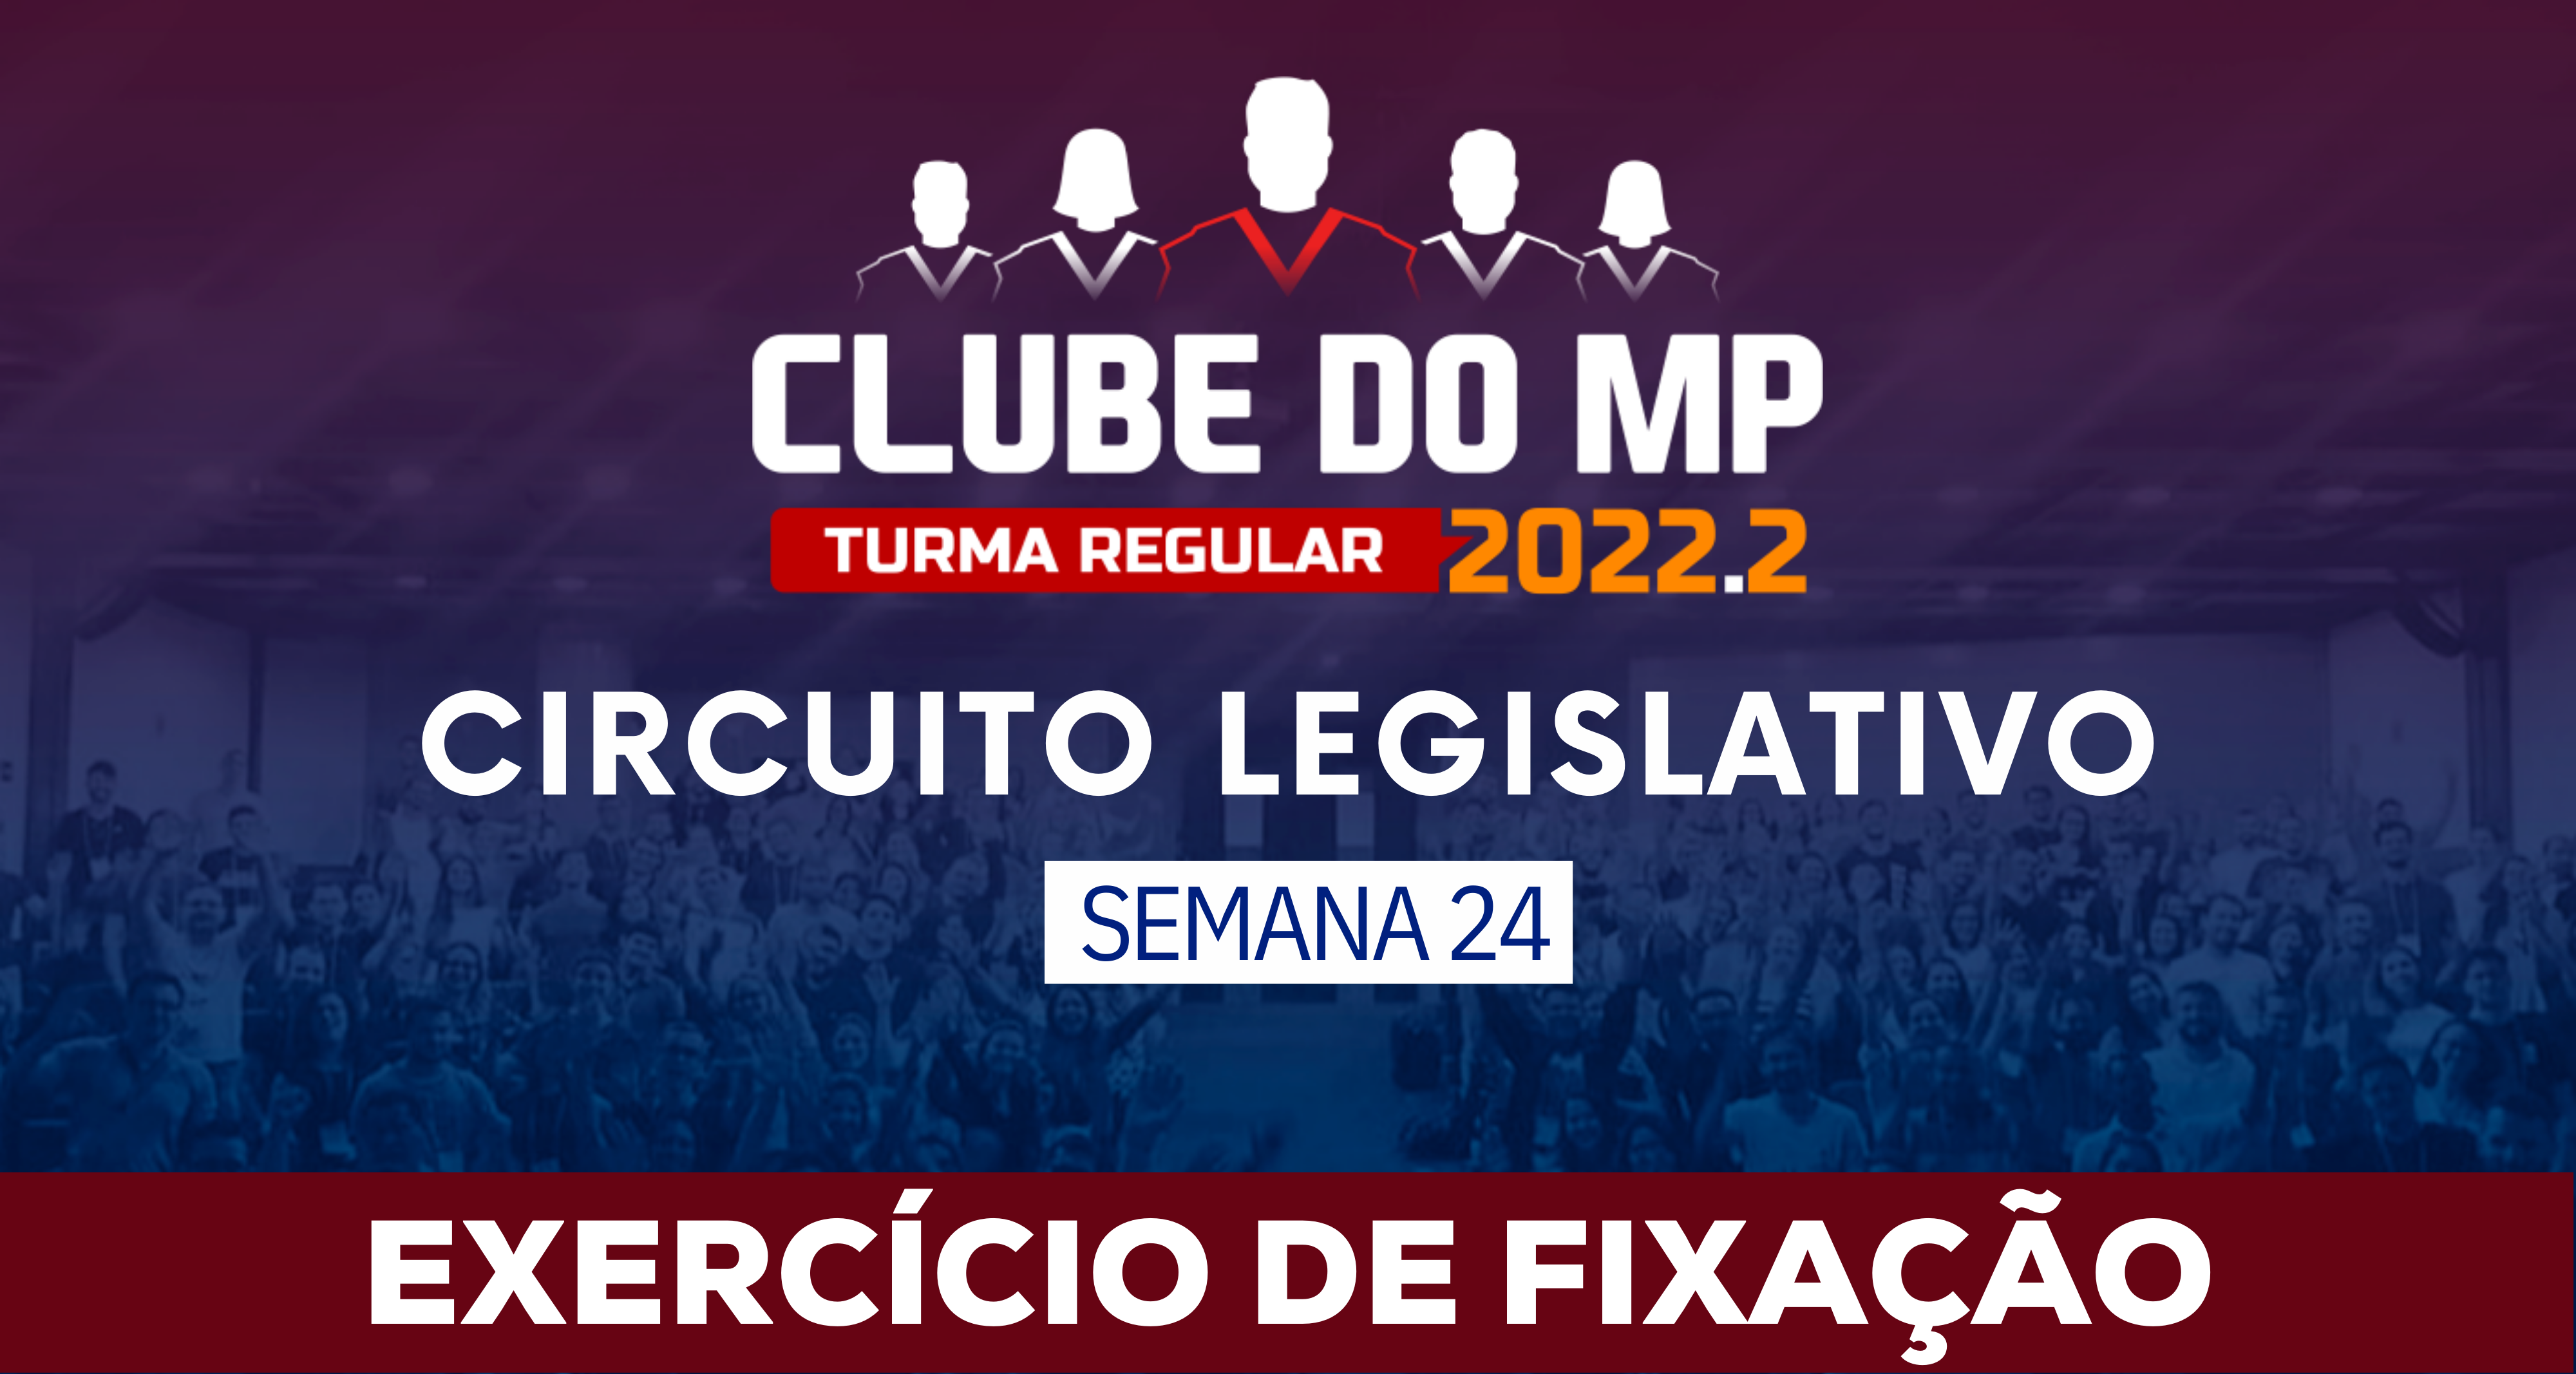 Circuito Legislativo 2022.2 (Clube do MP - Semana 24)